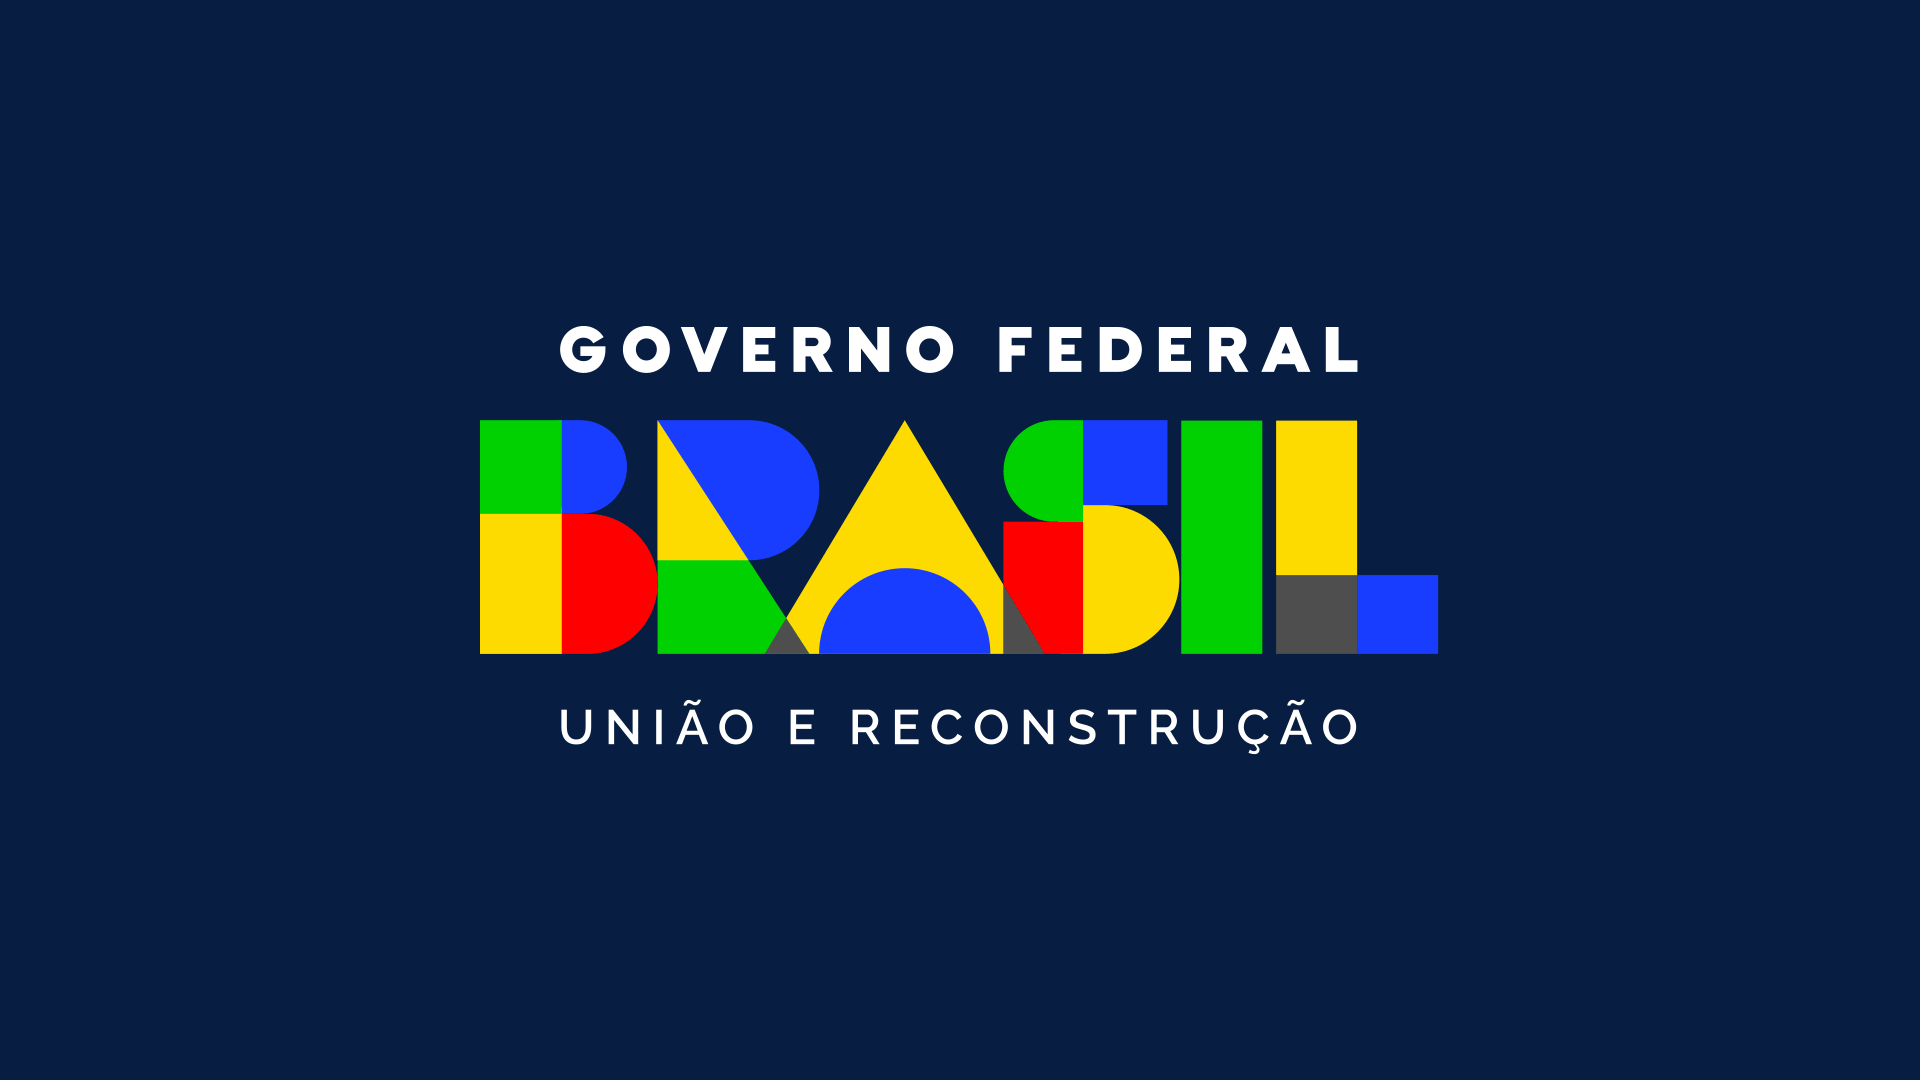 葡萄牙政府設計了一個極簡的新標誌 27